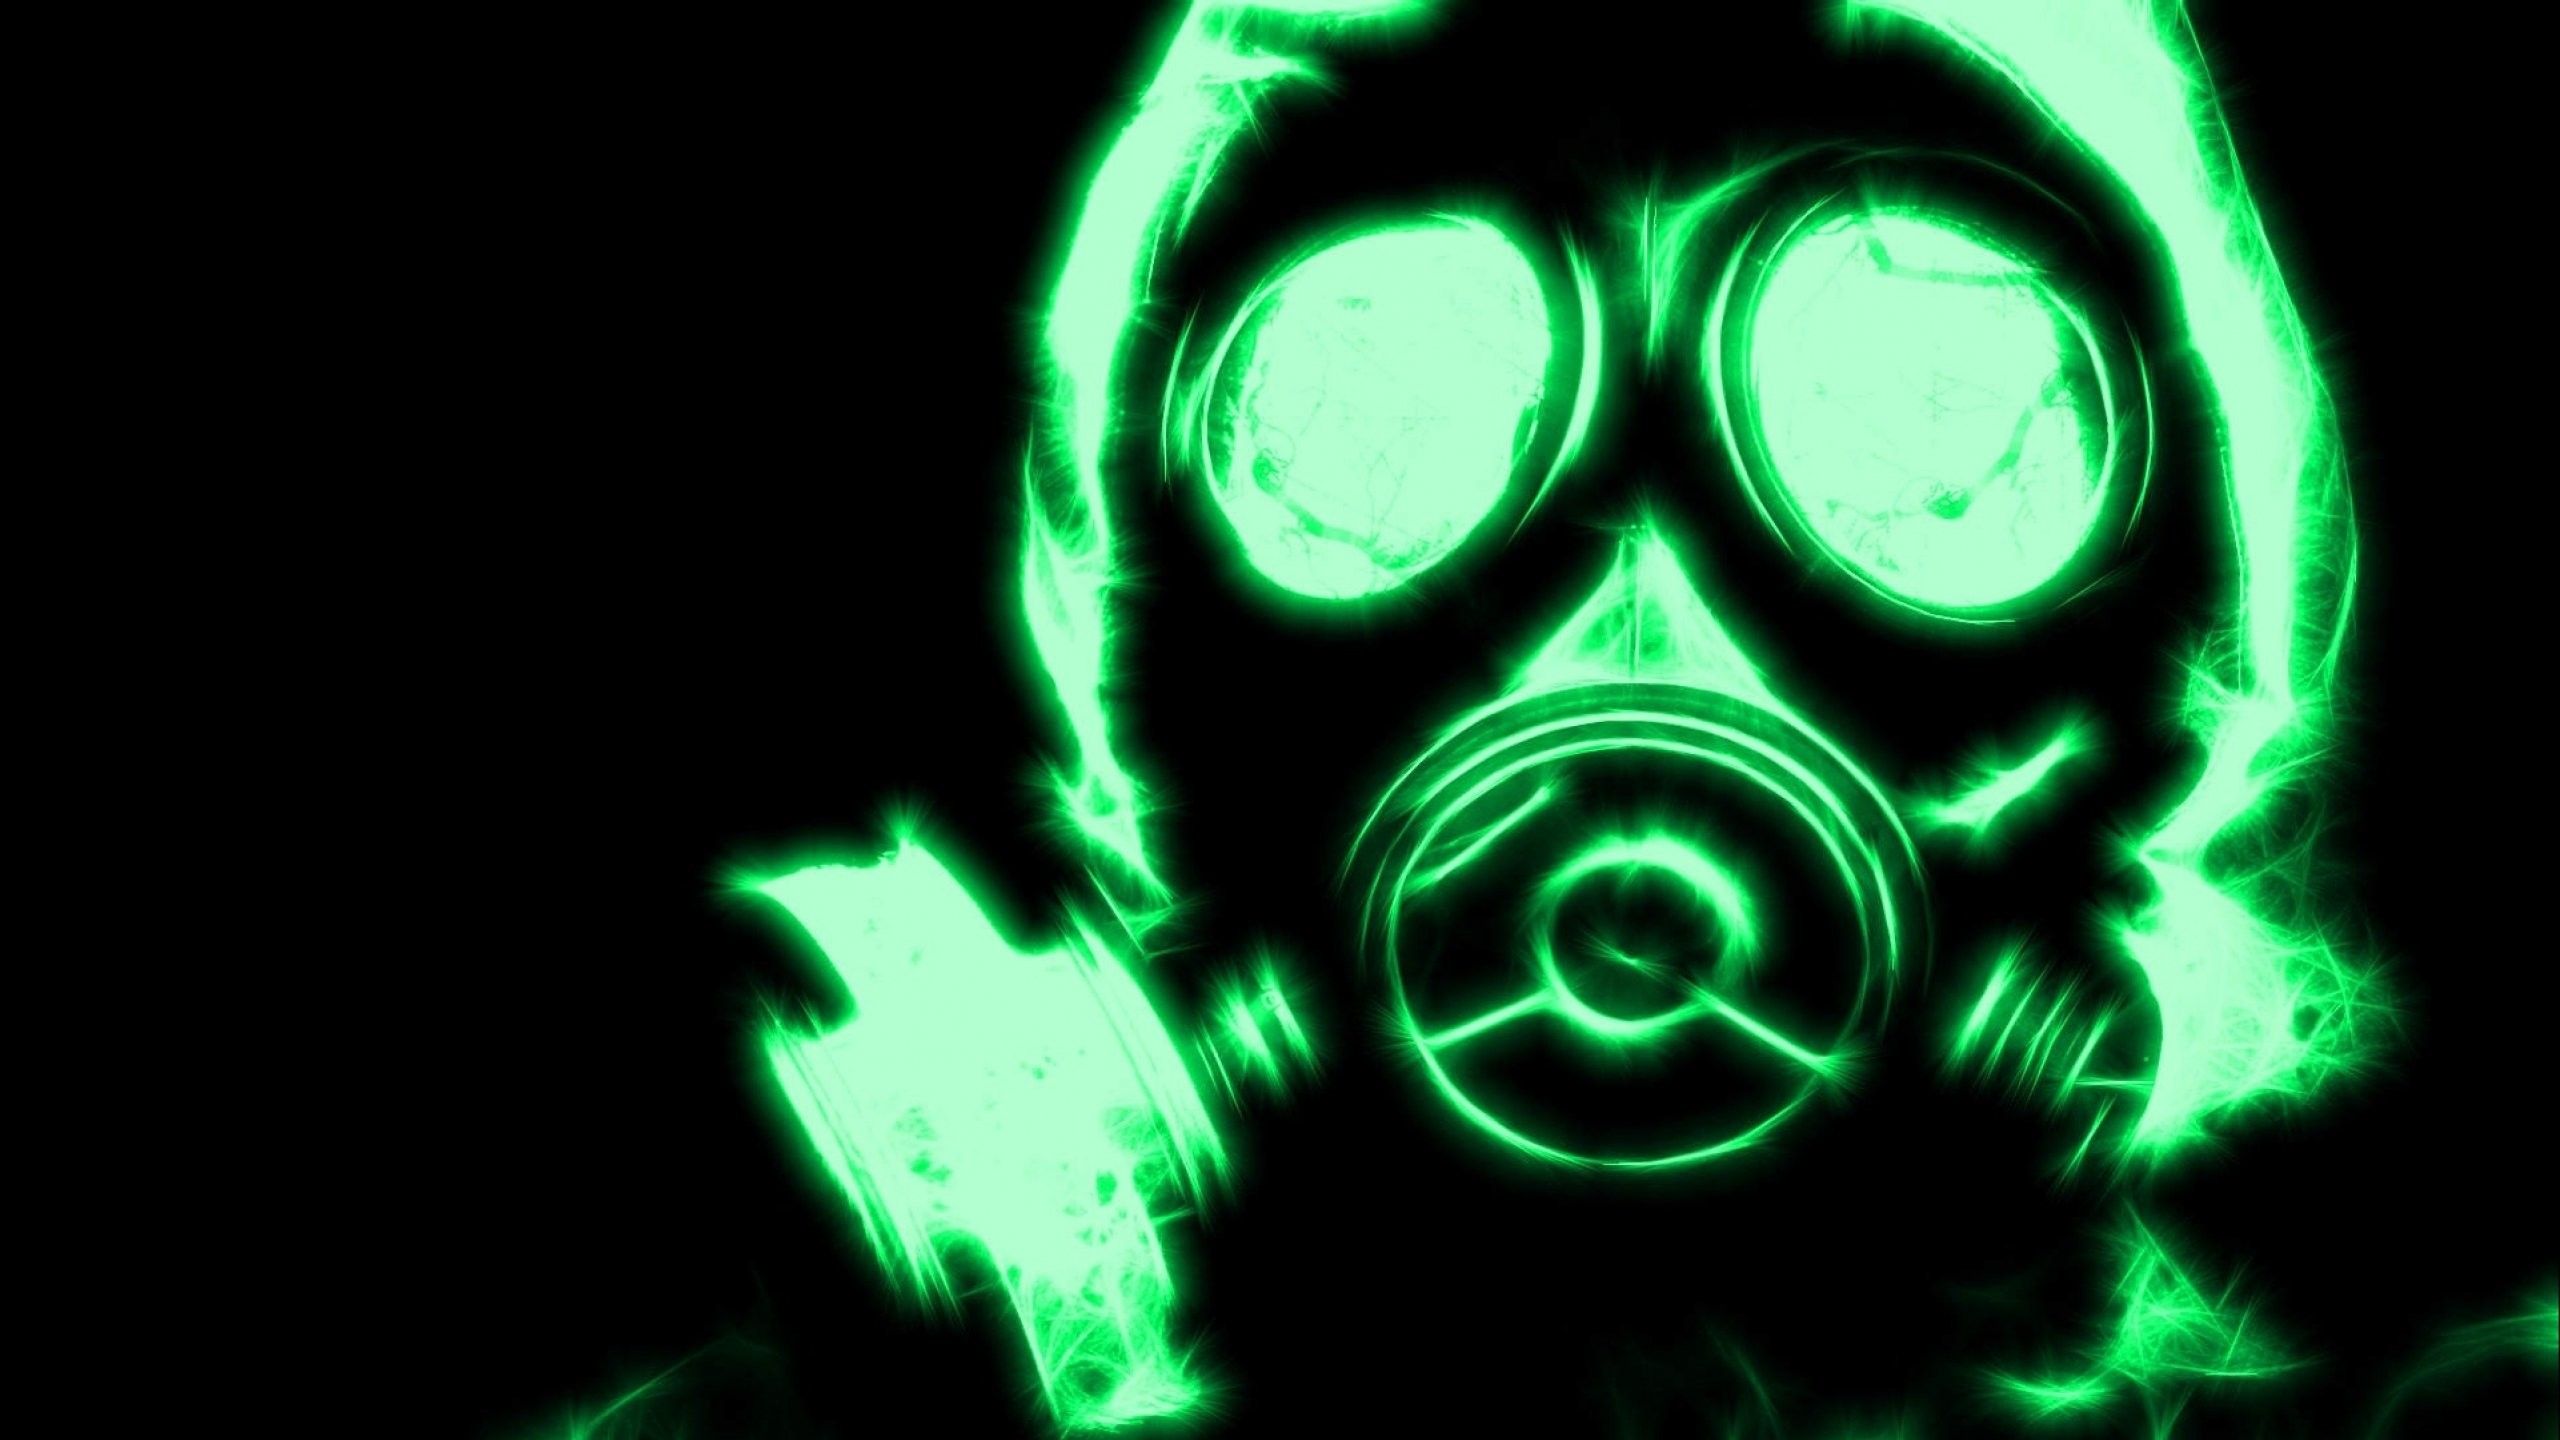 Cool Gas Mask Wallpaper. Gas mask, Dubstep wallpaper, Dubstep